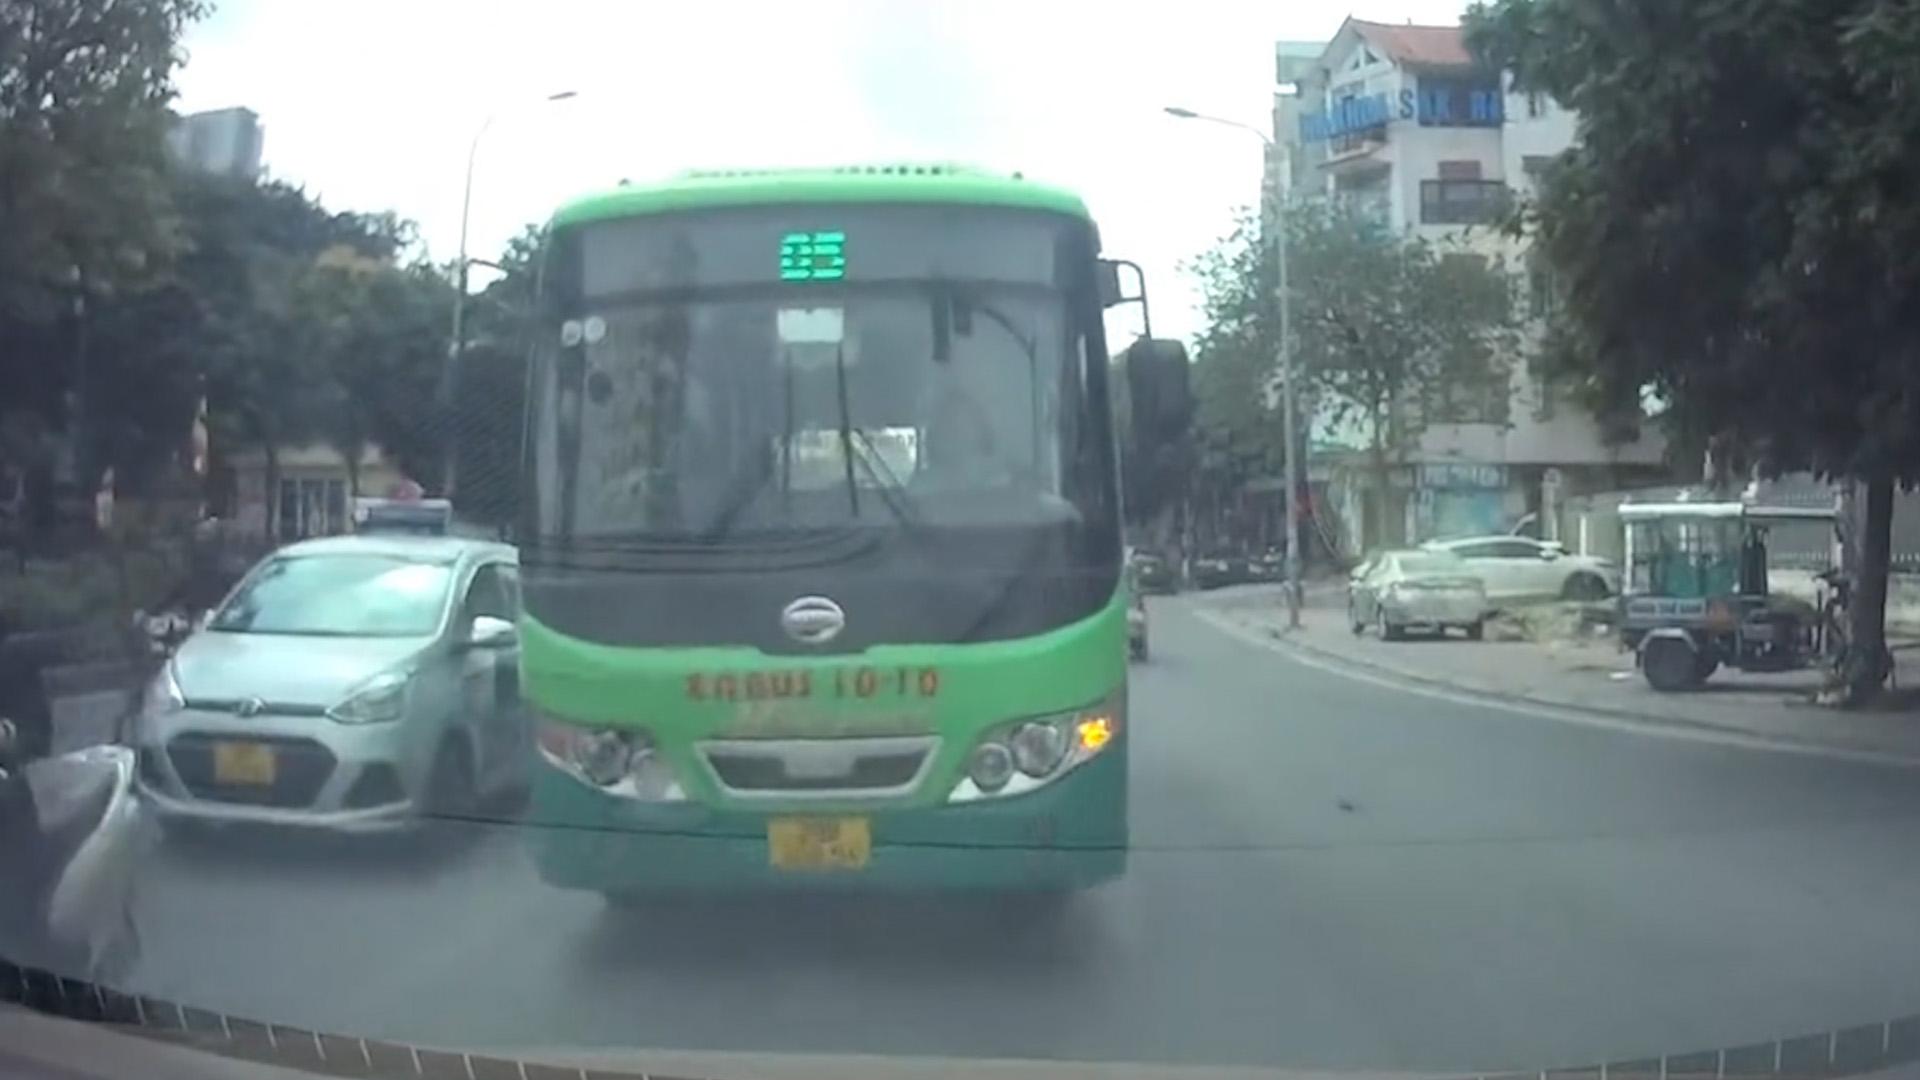 Thanh lý lô xe Bus B60 Trung Quốc đời 2006 tuyến bus nội đô Hà Nội Giá rẻ  tại Bắc Giang  Công Ty Tnhh Bắc Hà  MBN182704  0915150234